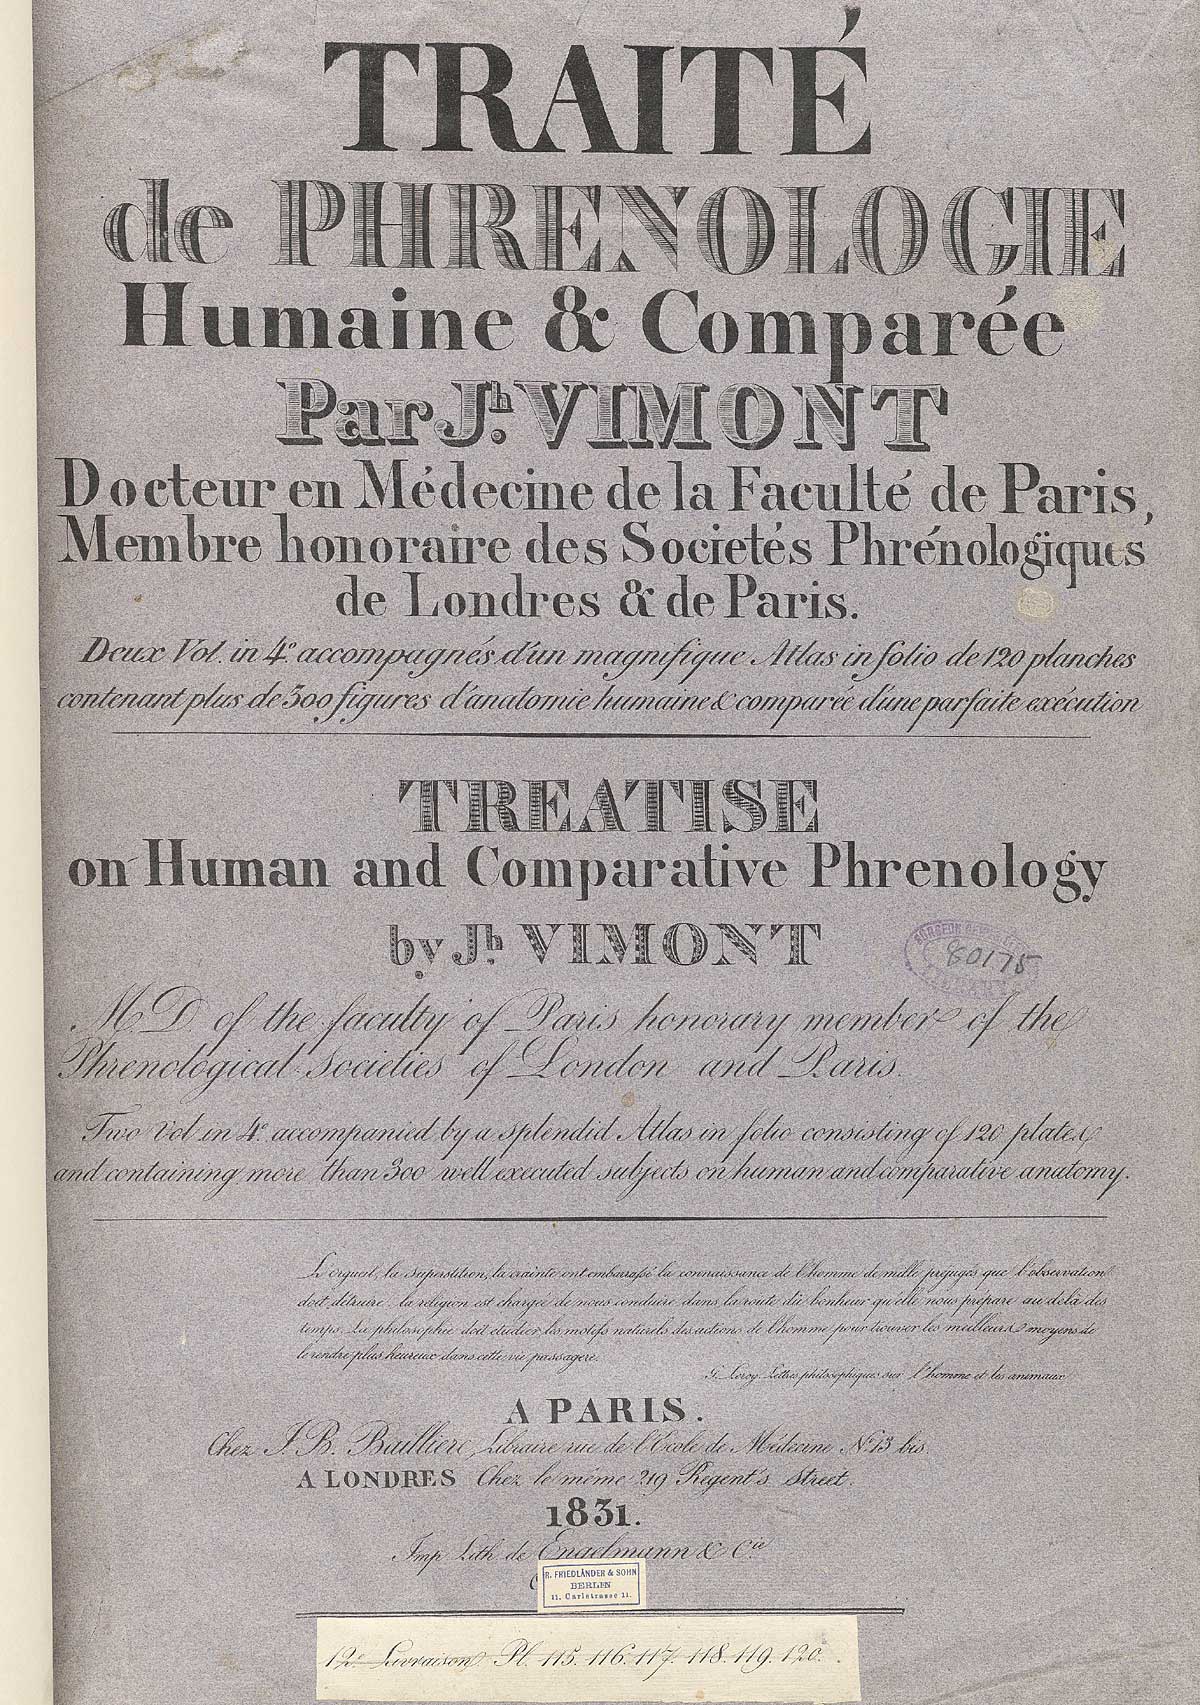 Title page of the atlas volume of Joseph Vimont's Traité de phrénologie humaine et comparée.